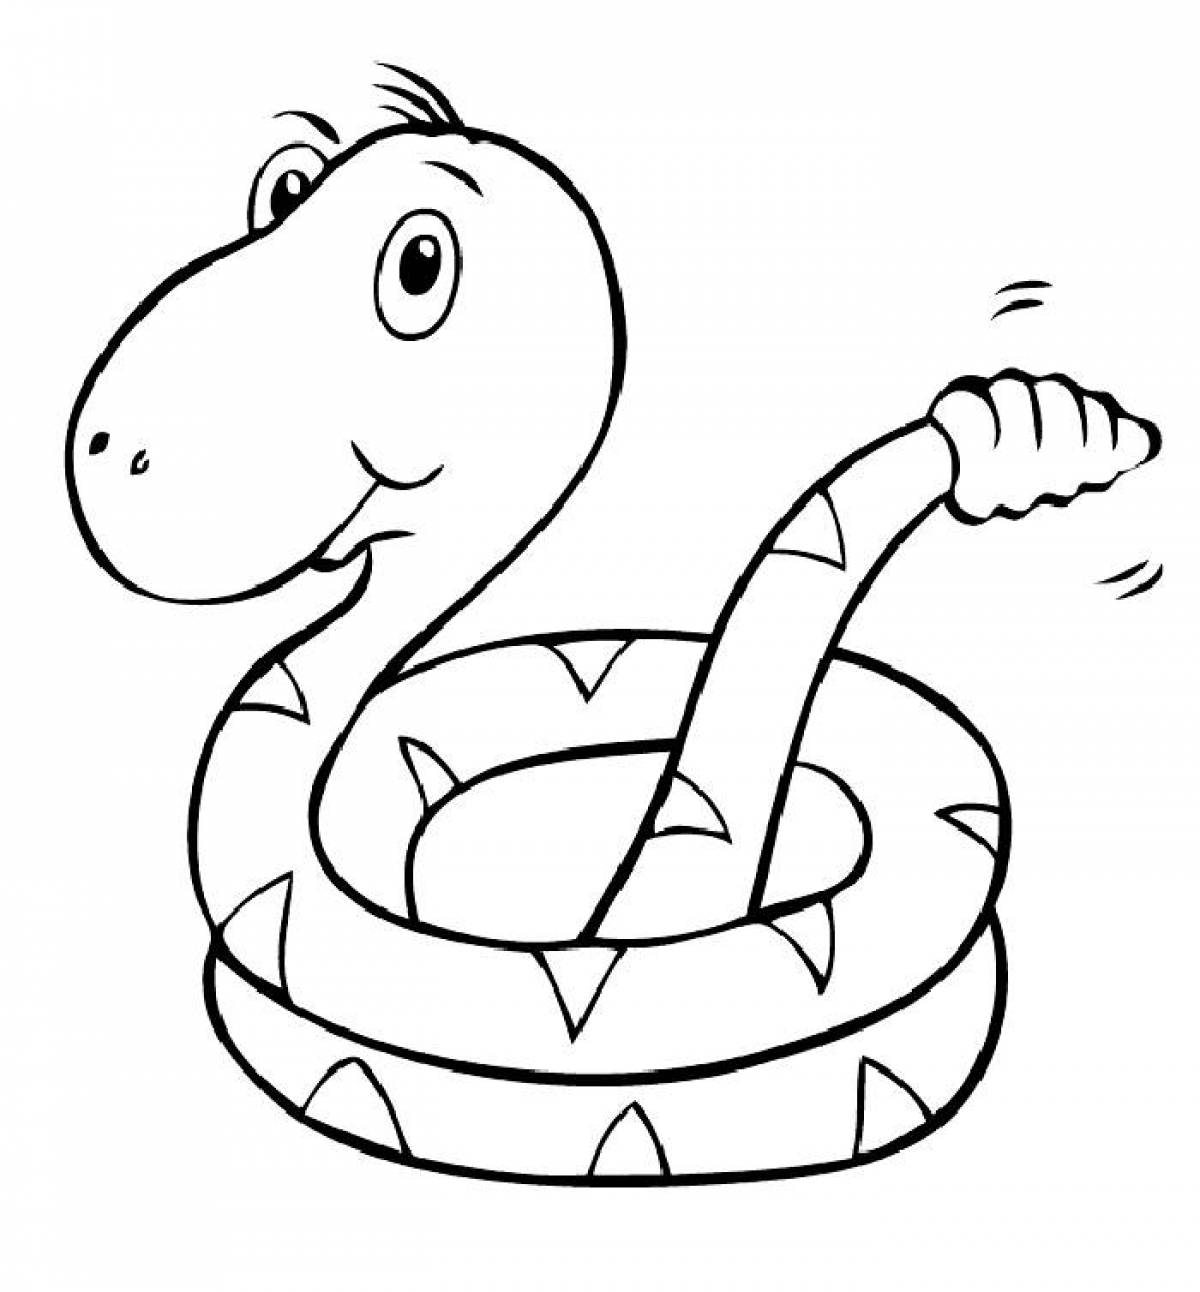 Змей раскраска для детей